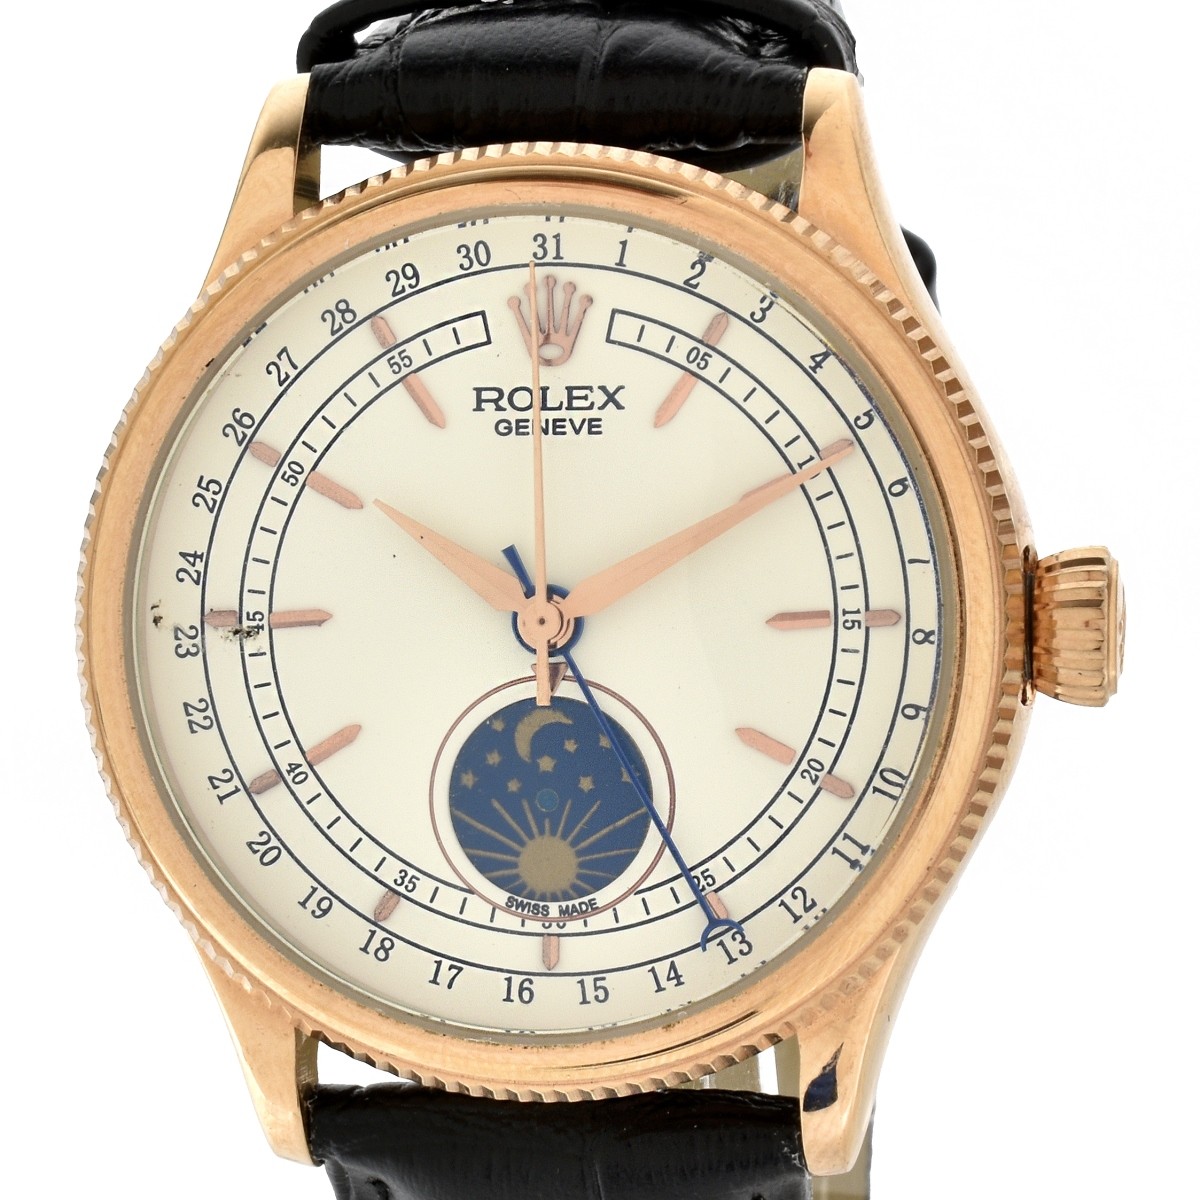 Replica "Rolex Cellini" Watch